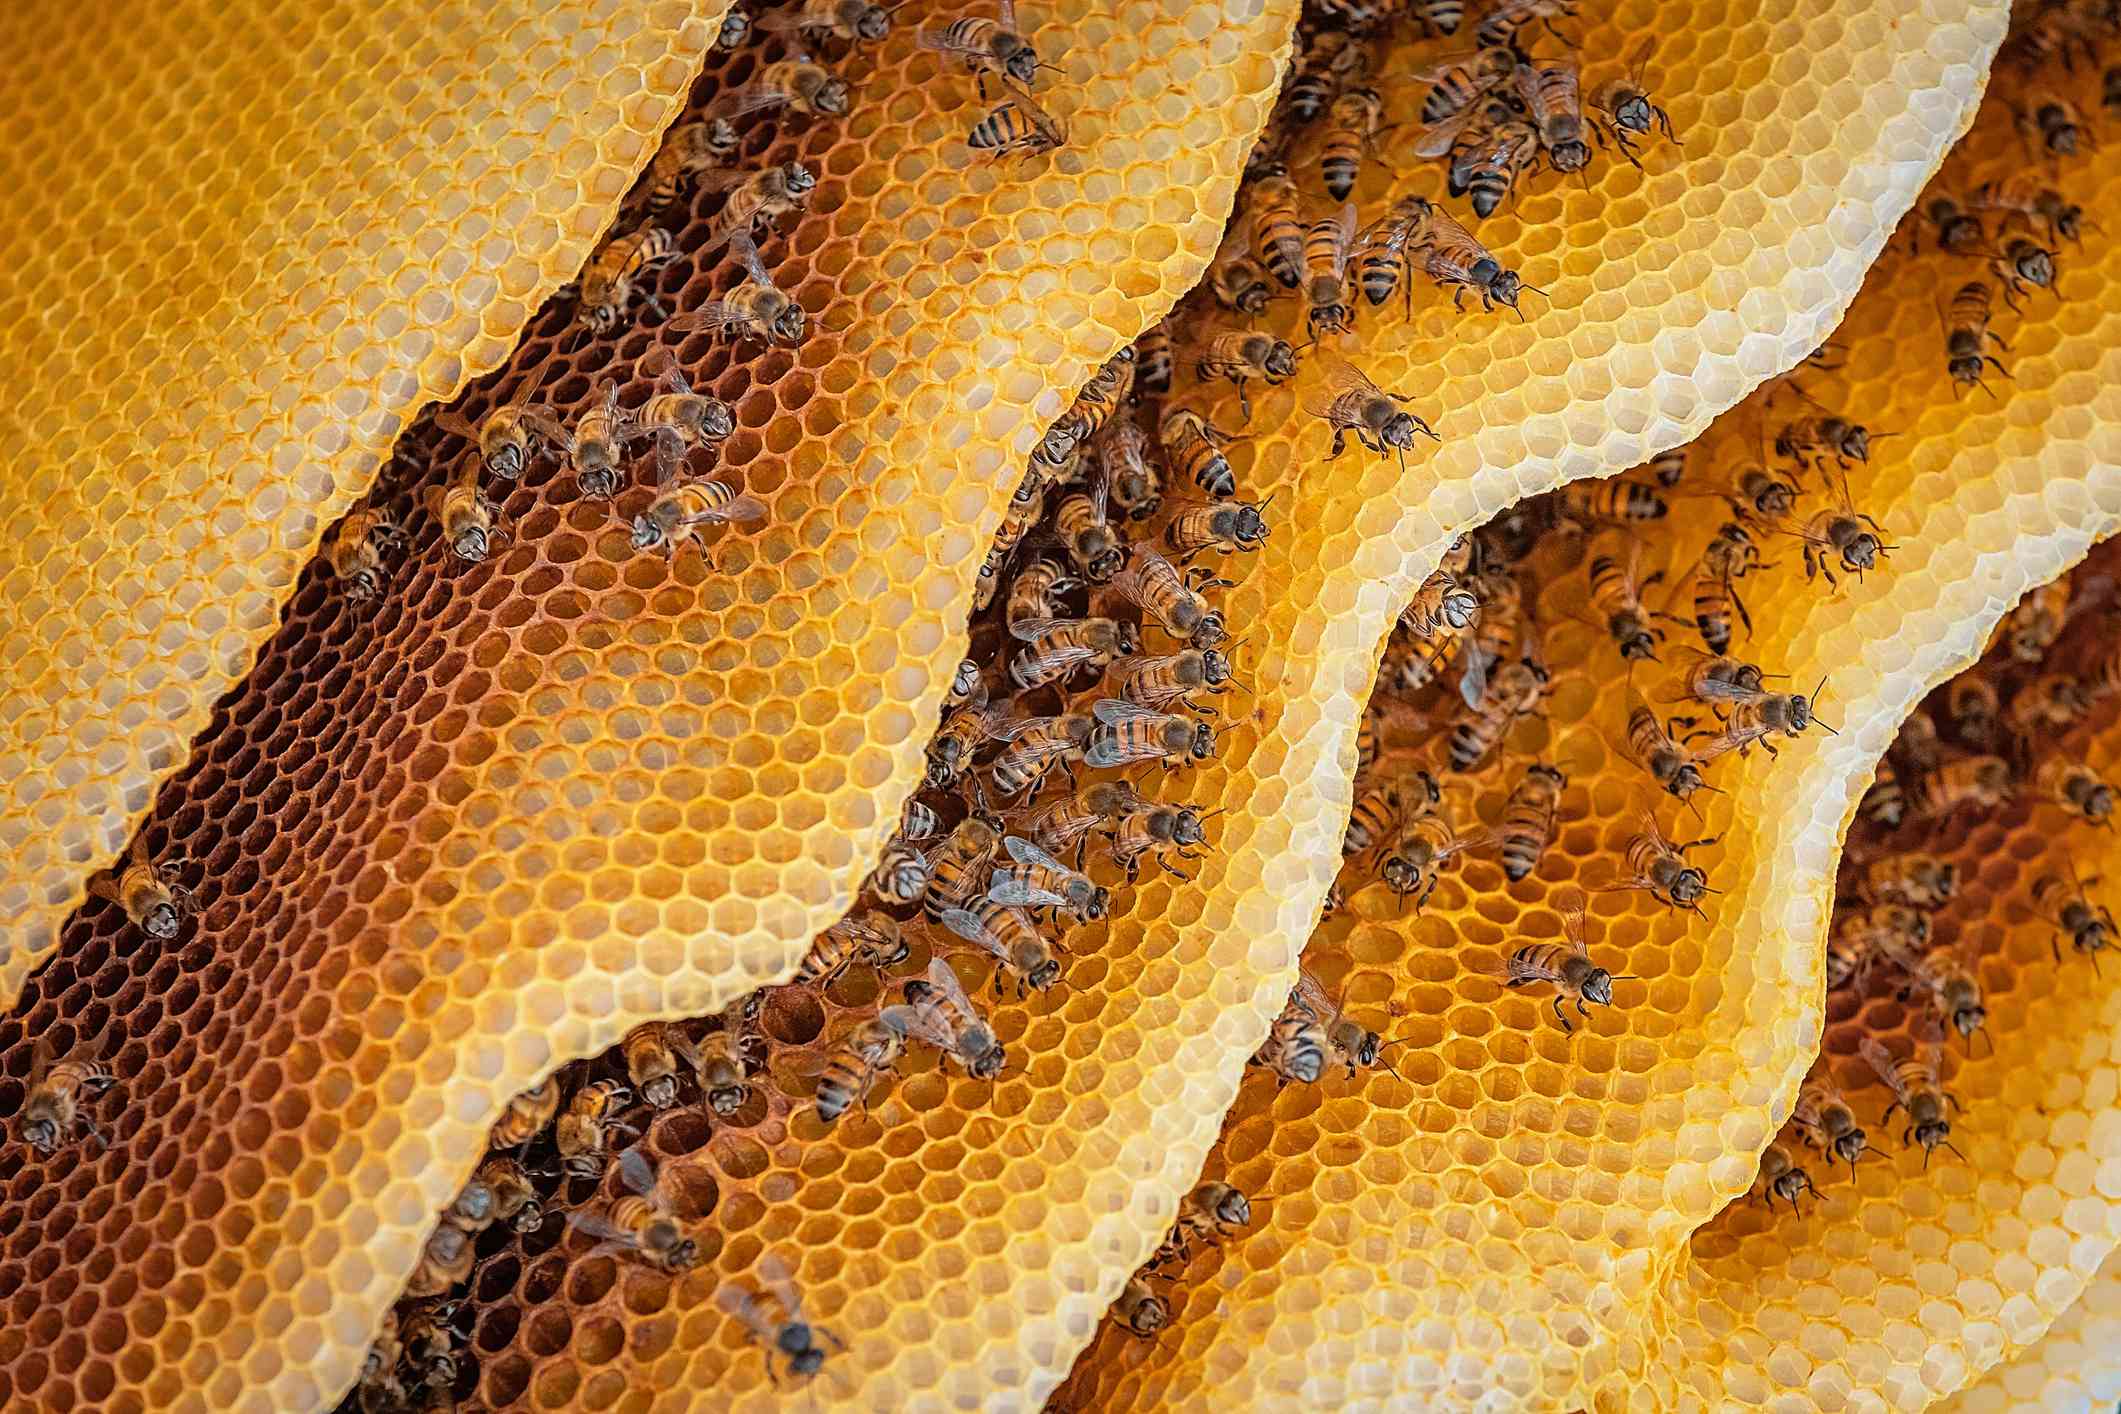 Primer plano de una colonia de abejas en una colmena